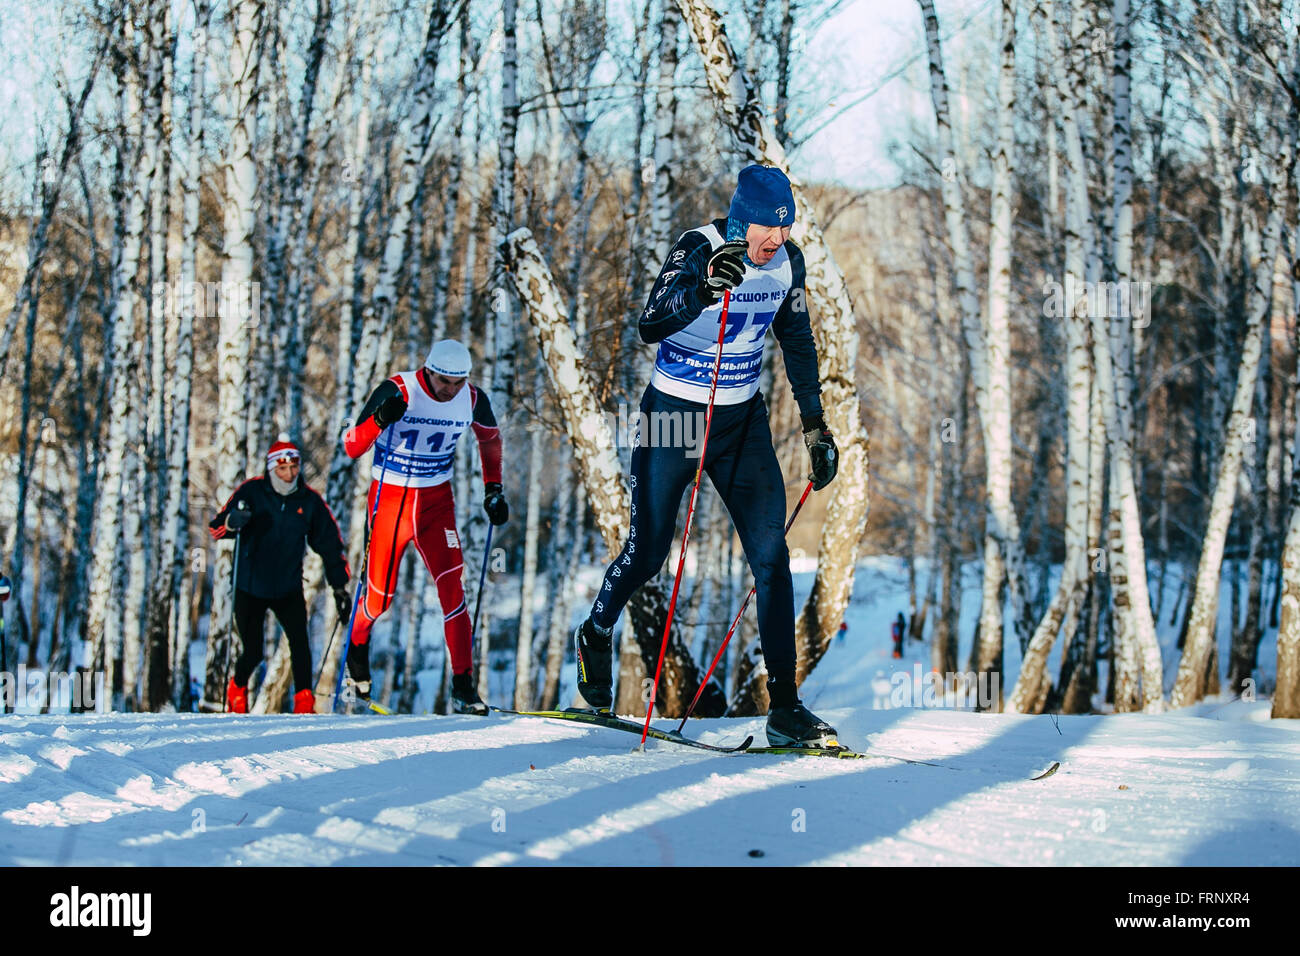 Les skieurs du groupe style classique dans une forêt de bouleaux d'hiver au cours de championnat de France en ski de fond Banque D'Images